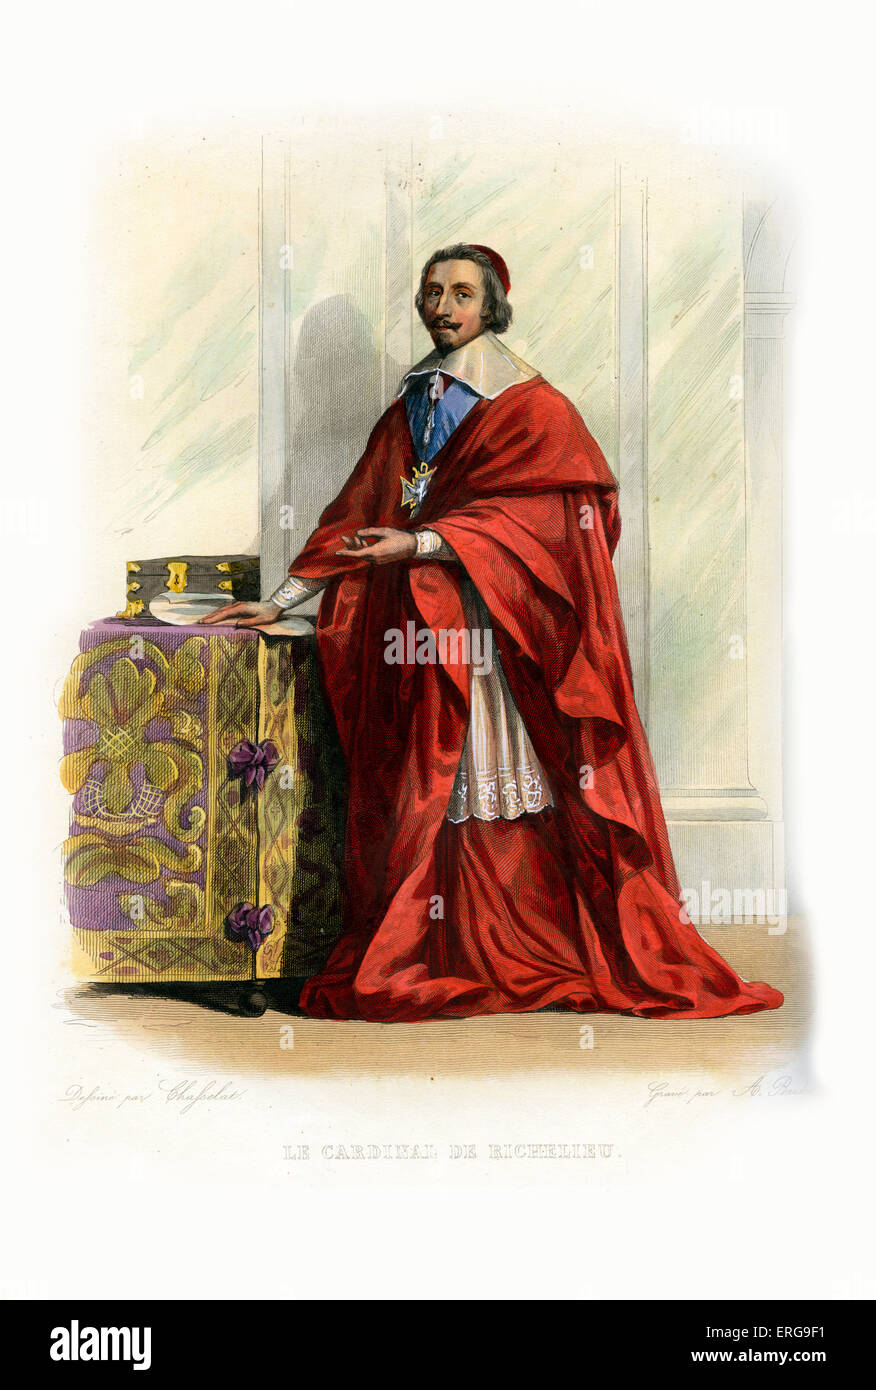 Armand Jean du Plessis de Richelieu, Kardinal und Herzog de Richelieu. Französischer Geistlicher und Staatsmann. 1585-1642. Kupferstich von Stockfoto